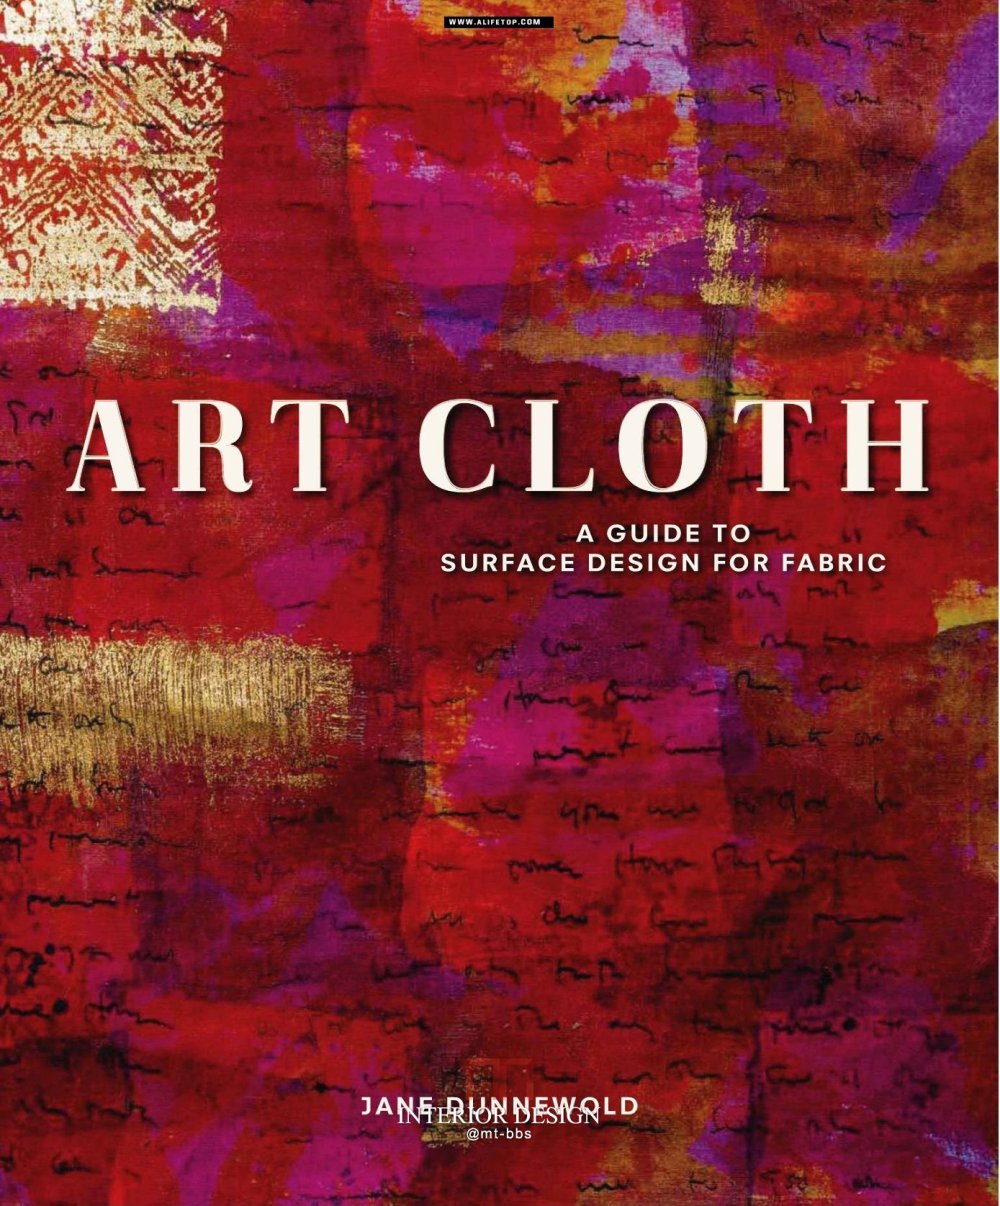 Art Cloth 关于手工的杂志_Art Cloth 关于手工的杂志001.jpg